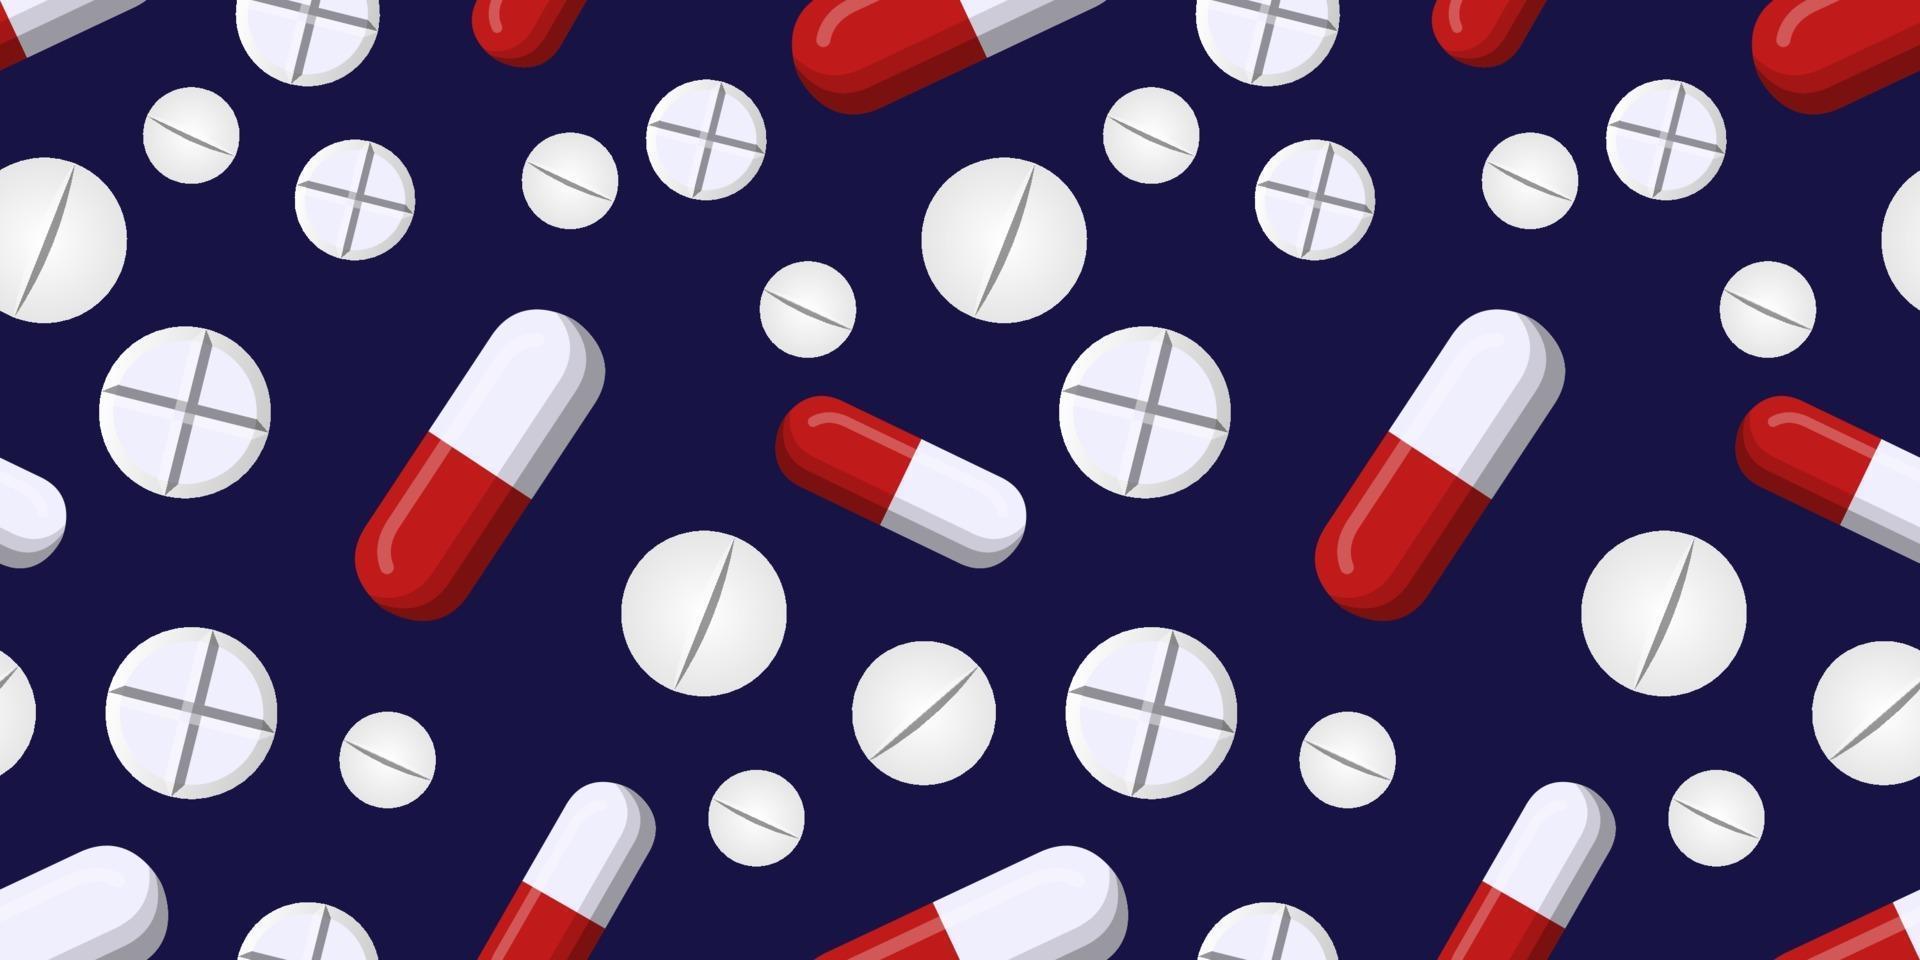 modèle vectoriel continu de pilule capsule rouge et blanche et une pilule blanche isolée sur fond bleu foncé. concepts créatifs de médecine. illustration pour l'industrie pharmaceutique.